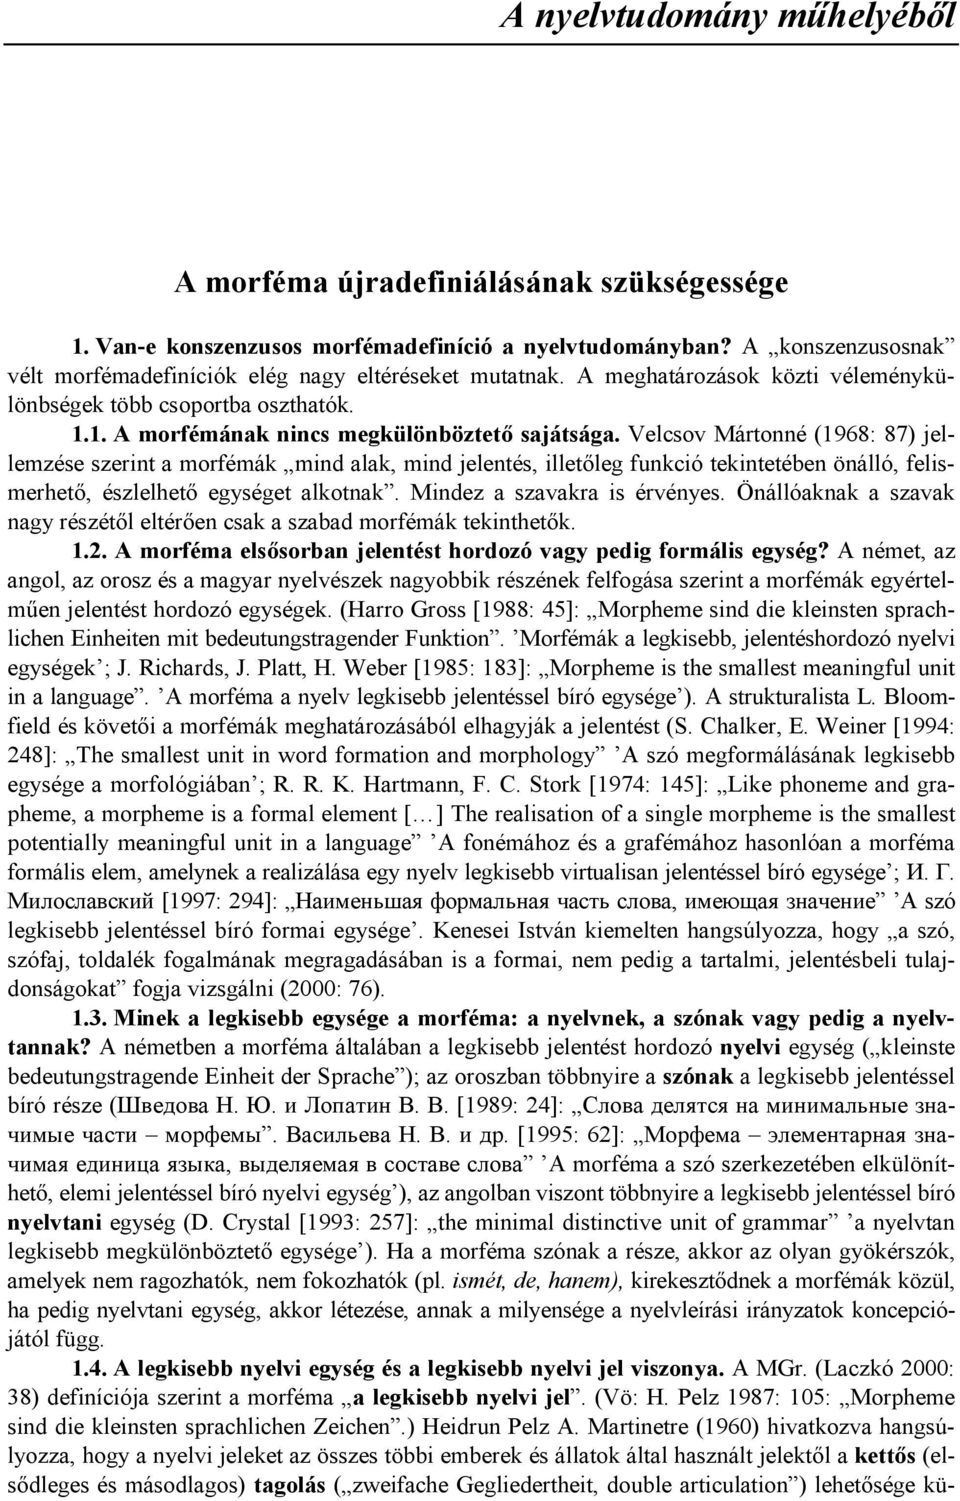 Velcsov Mártonné (1968: 87) jellemzése szerint a morfémák mind alak, mind jelentés, illet/leg funkció tekintetében önálló, felismerhet/, észlelhet/ egységet alkotnak. Mindez a szavakra is érvényes.